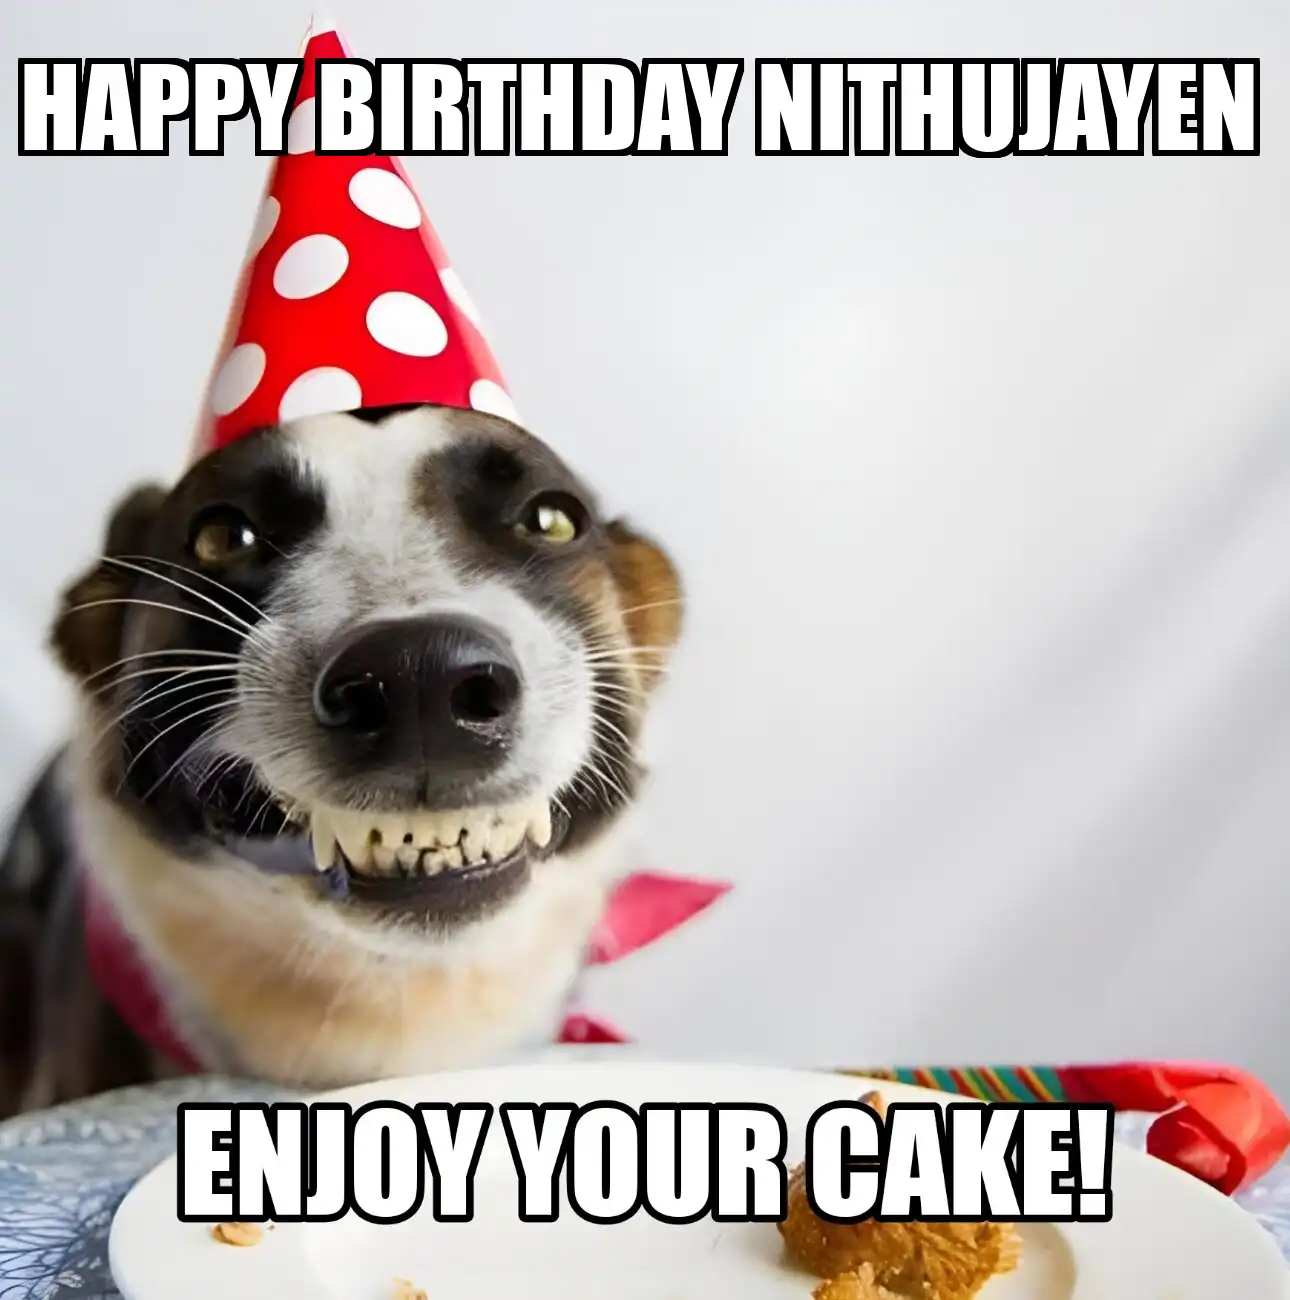 Happy Birthday Nithujayen Enjoy Your Cake Dog Meme